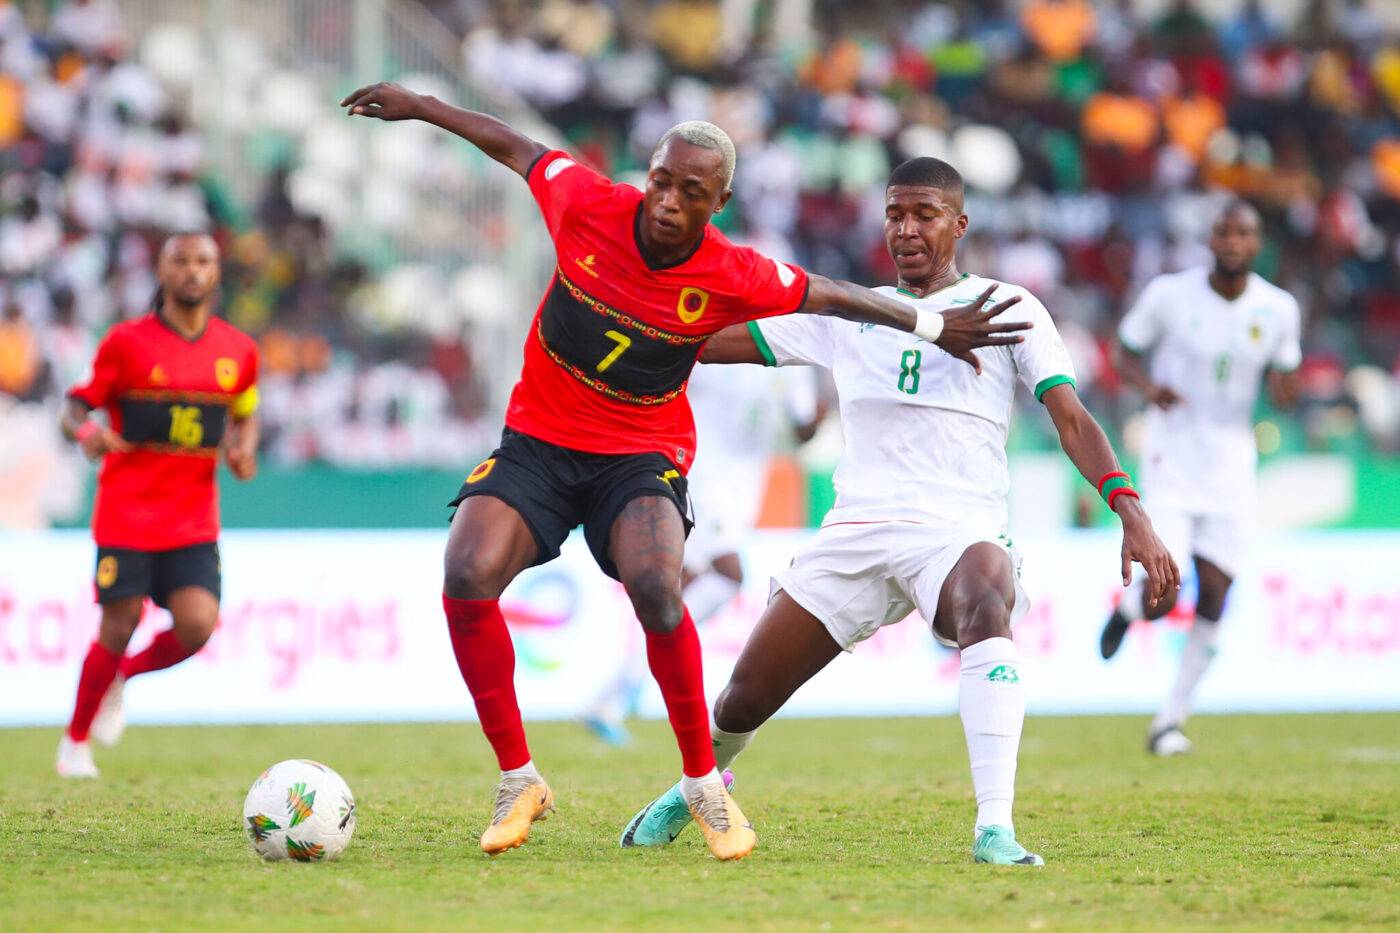 L’Angola punit la Mauritanie dans un match épique